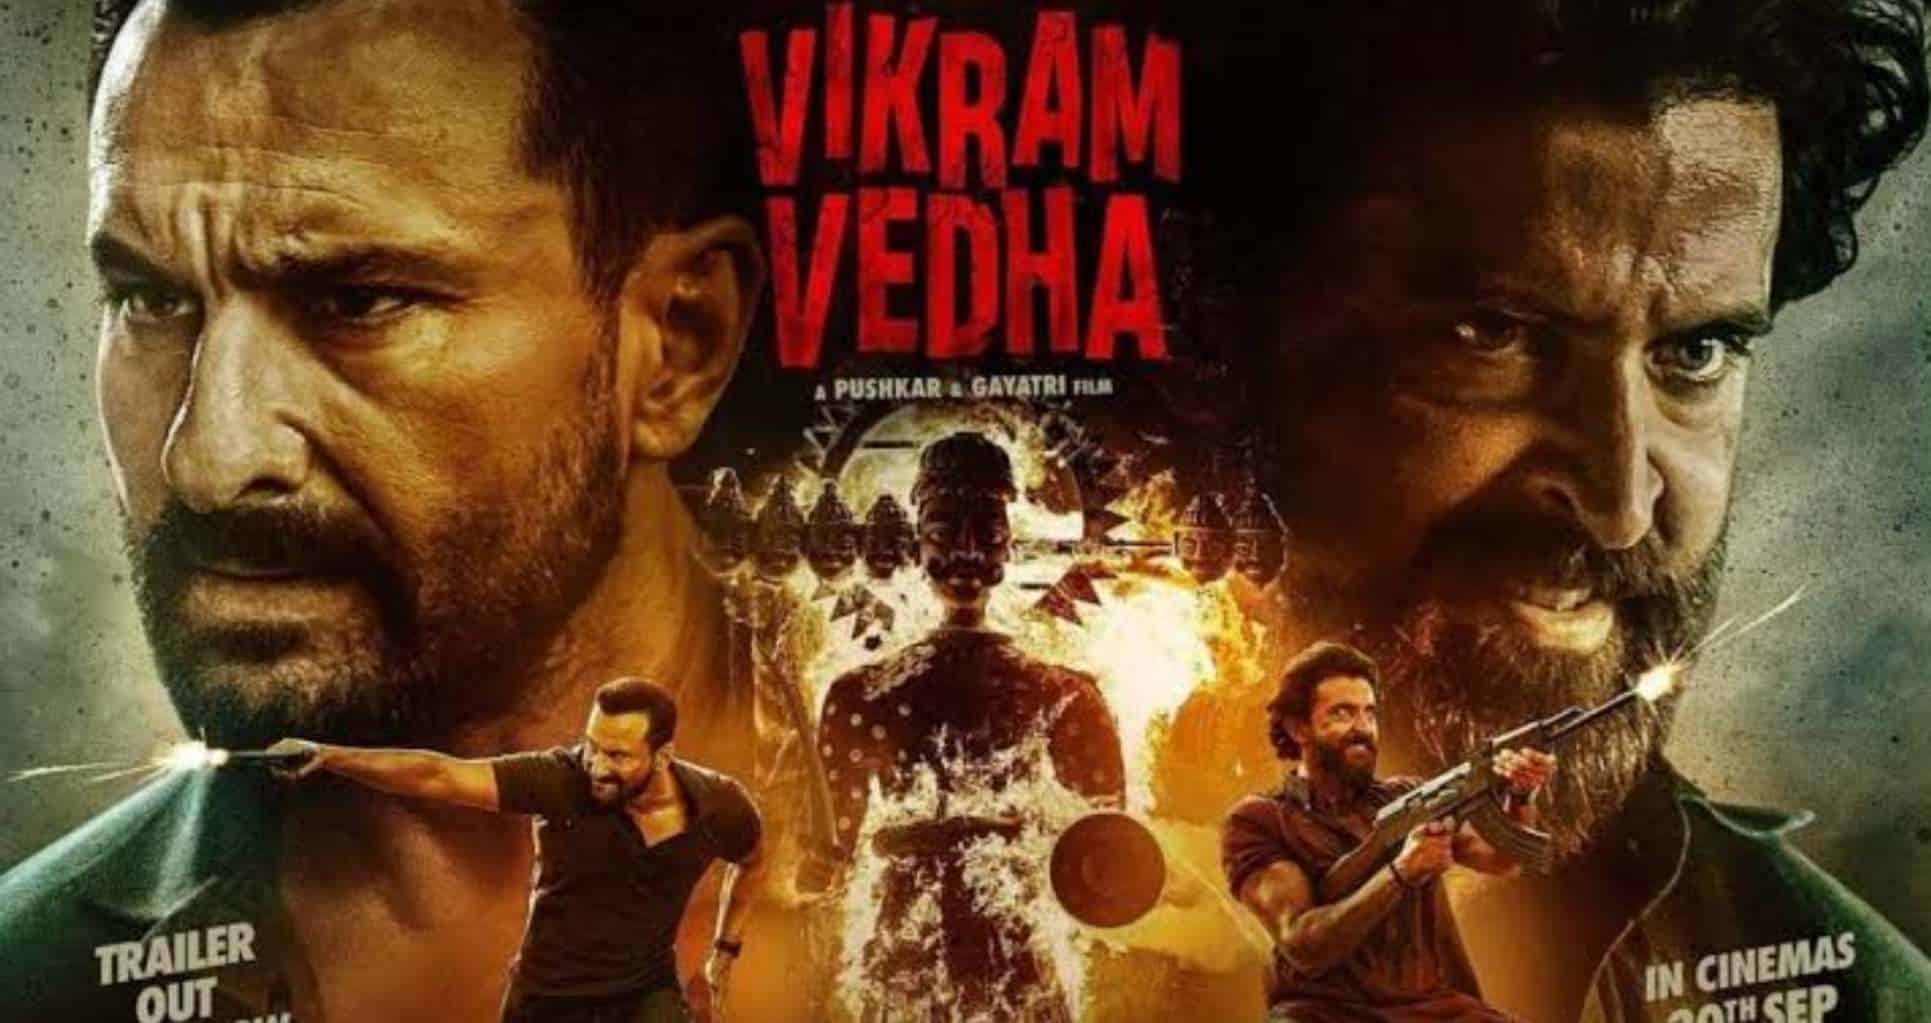 Vikram Veda 